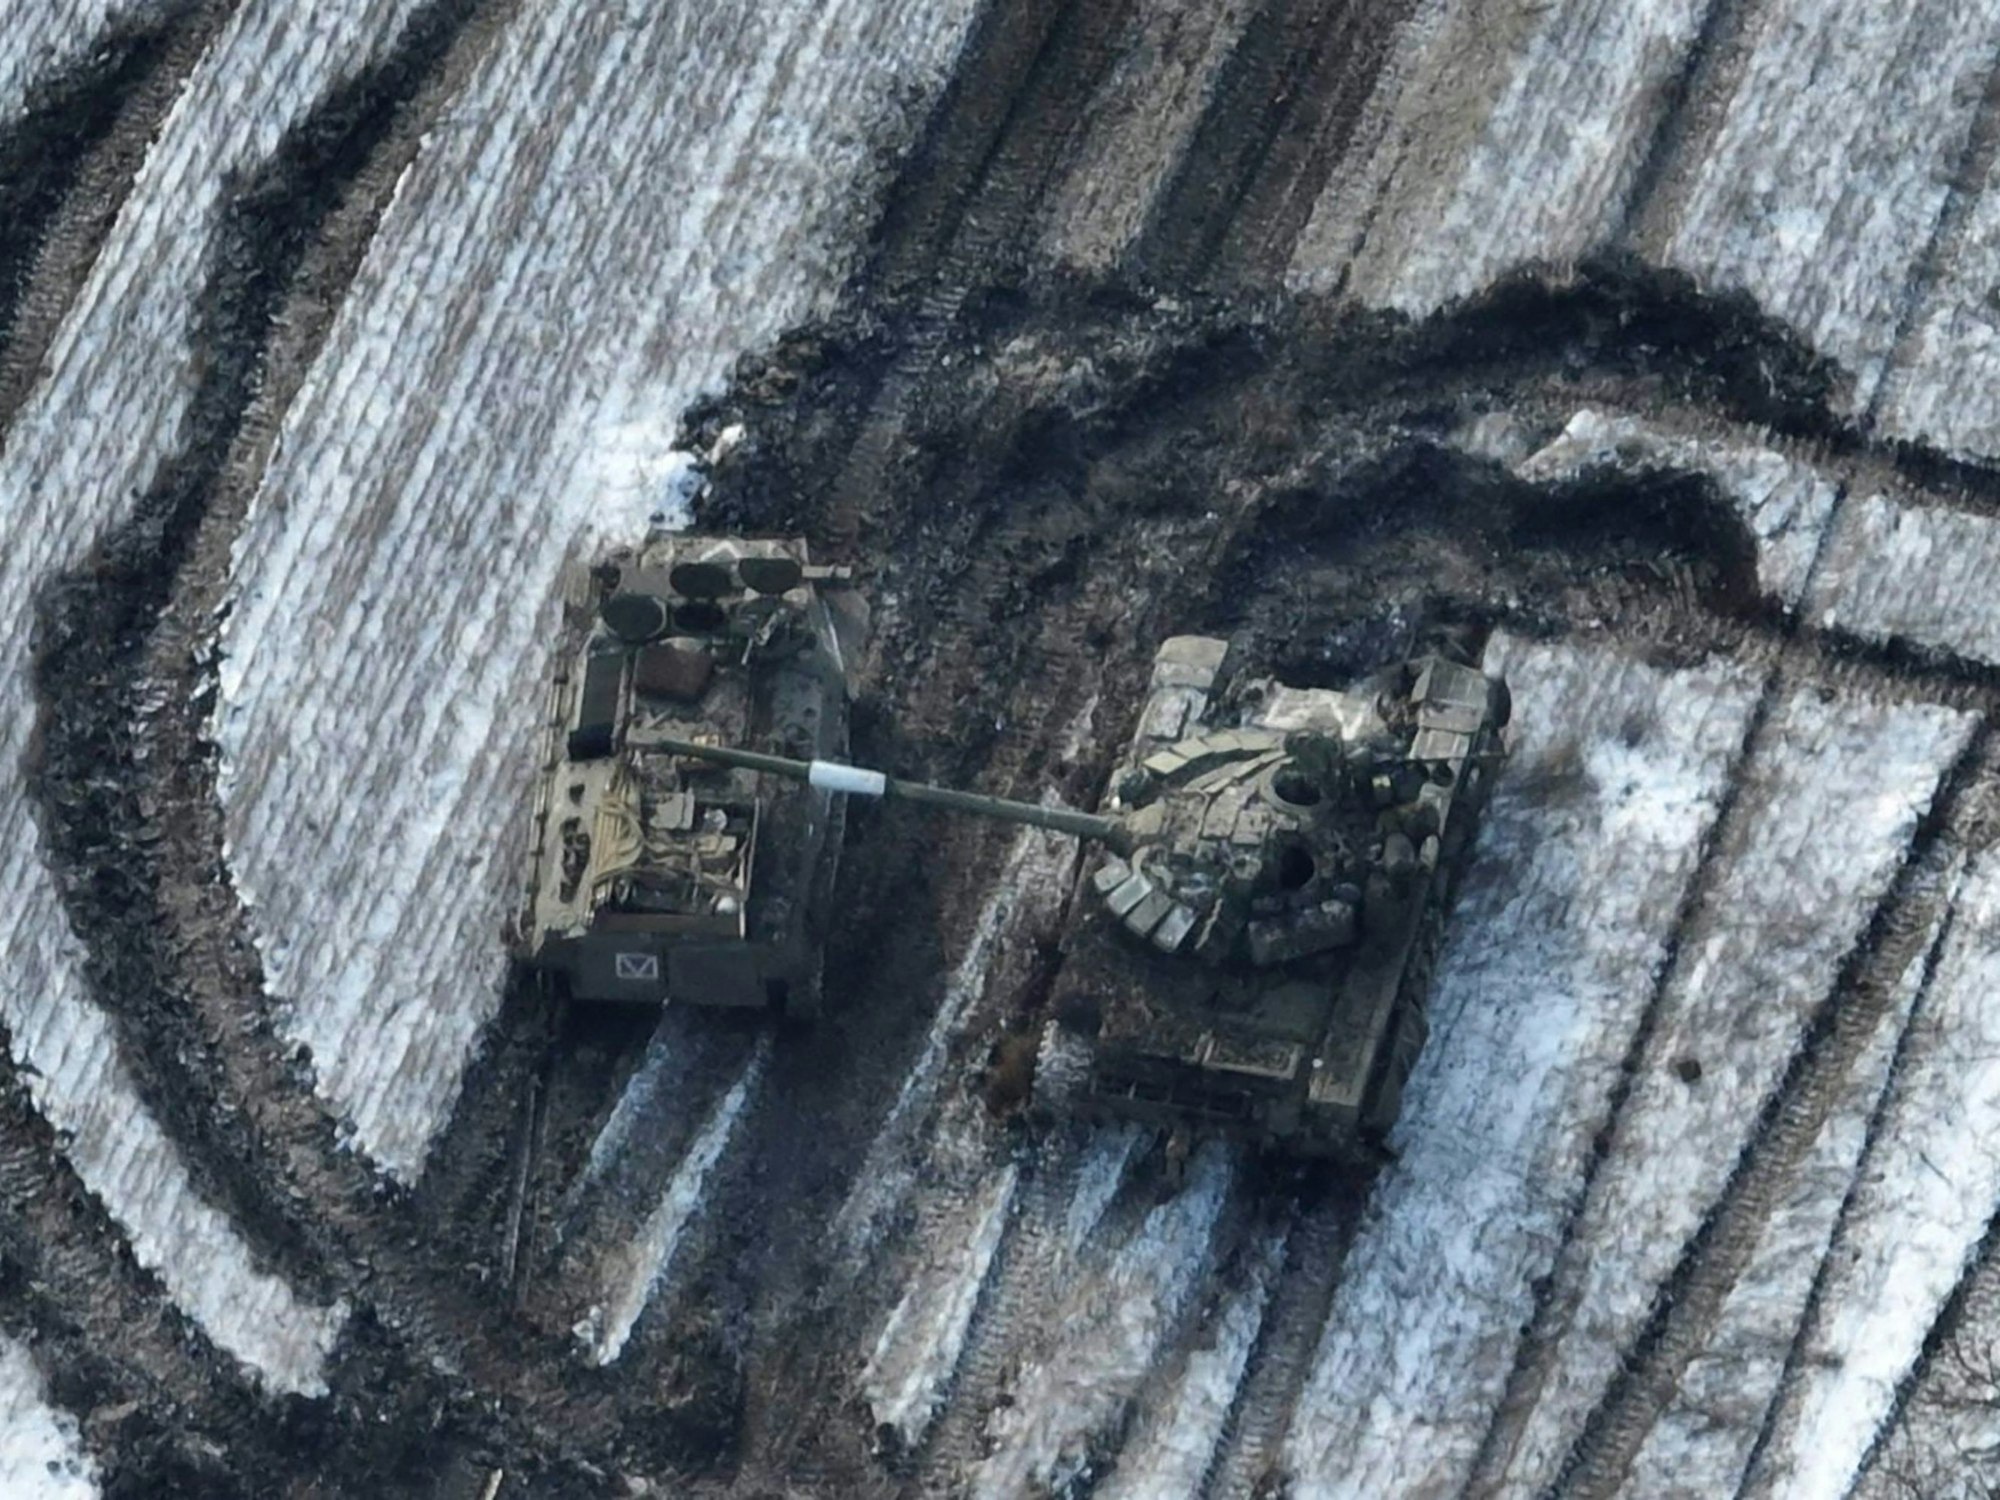 Dieses Bild der ukrainischen Streitkräfte vom Februar 2023 zeigt zerstörte russische Panzer auf einem Feld nach einem völlig missglückten Angriffsversuch bei Wuhledar. Der Kampf um die kleine Bergbaustadt an der östlichen Frontlinie der Ukraine hat sich zu einem entscheidenden Brennpunkt im Kampf um Donezk entwickelt.